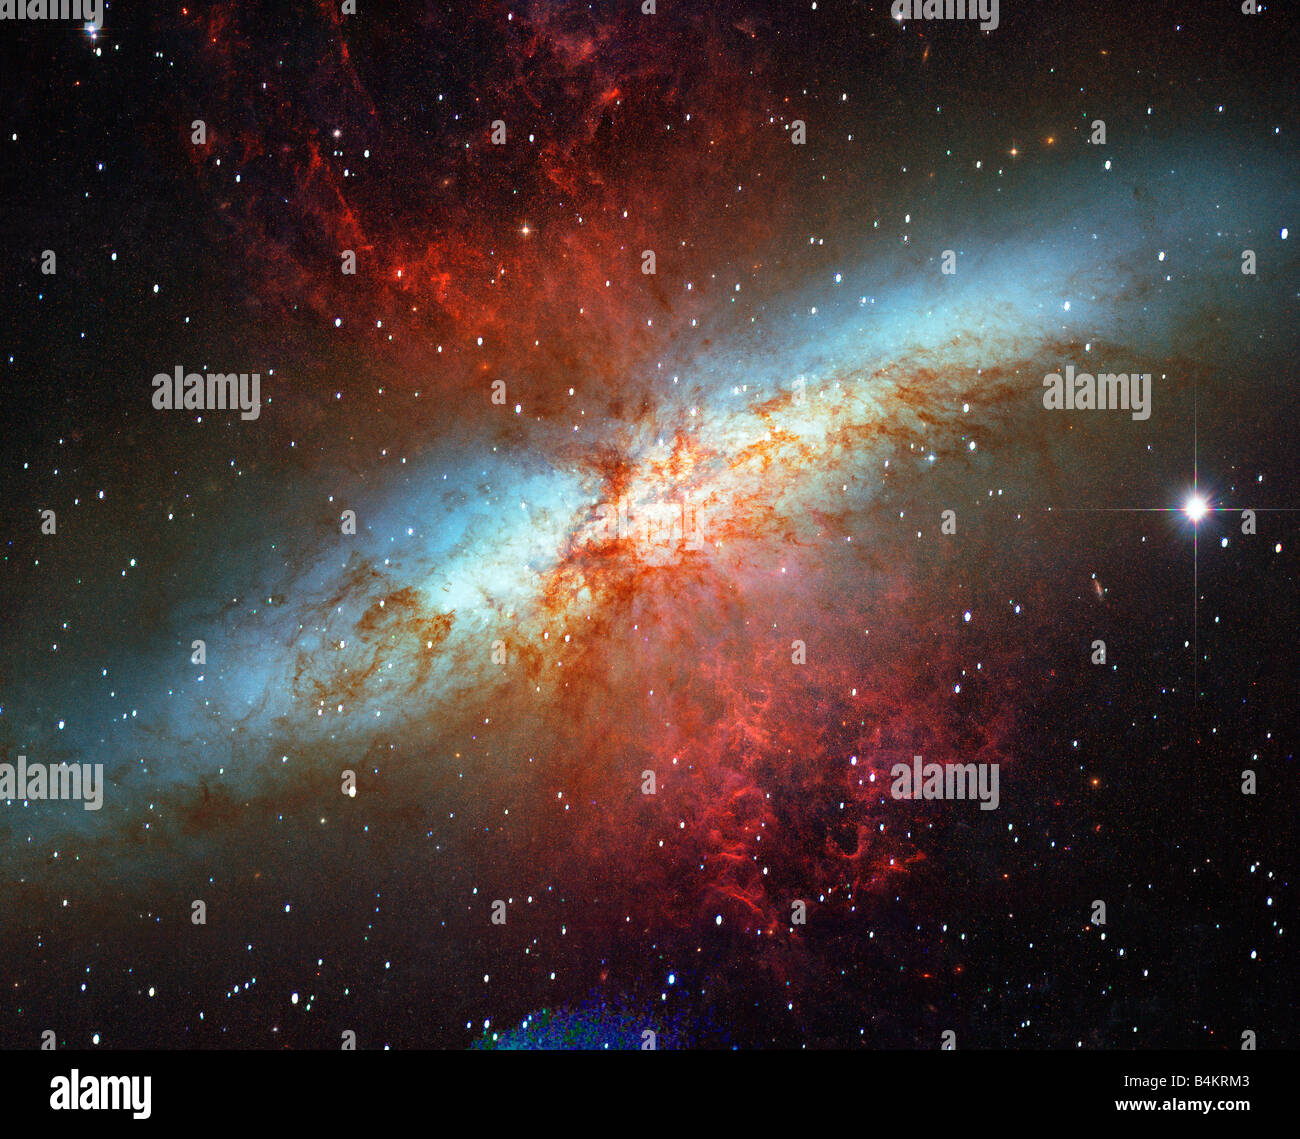 Spiralgalaxie Millionen Lichtjahre von der Erde von der NASA Hubble Teleskop fotografiert Stockfoto